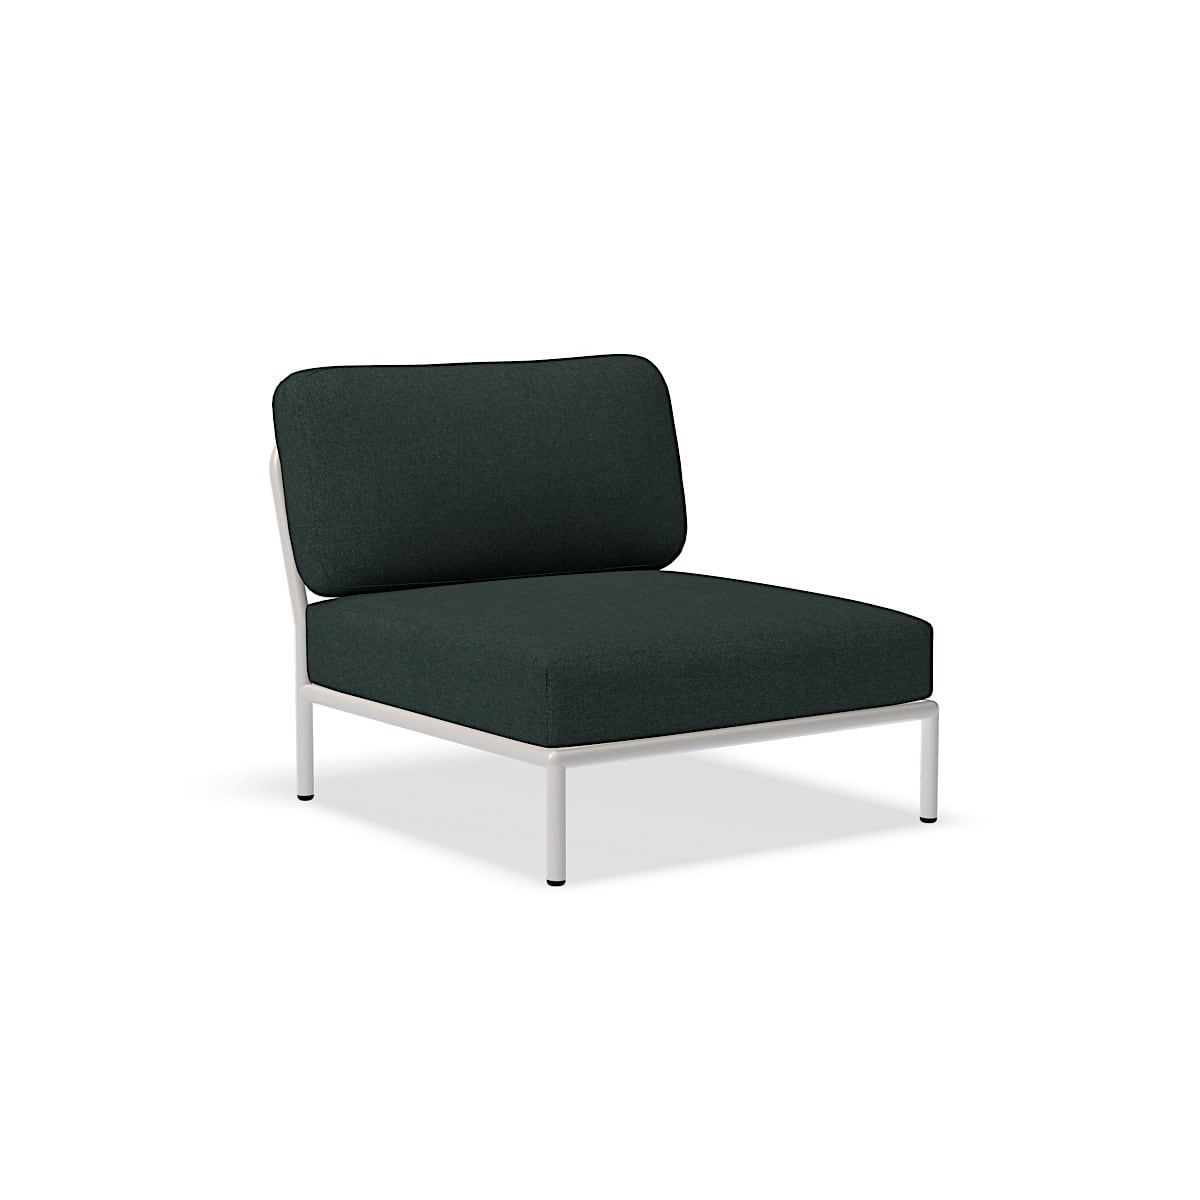 כיסא - 12205-4443 - כיסא, אלפיני (HERITAGE), מבנה לבן